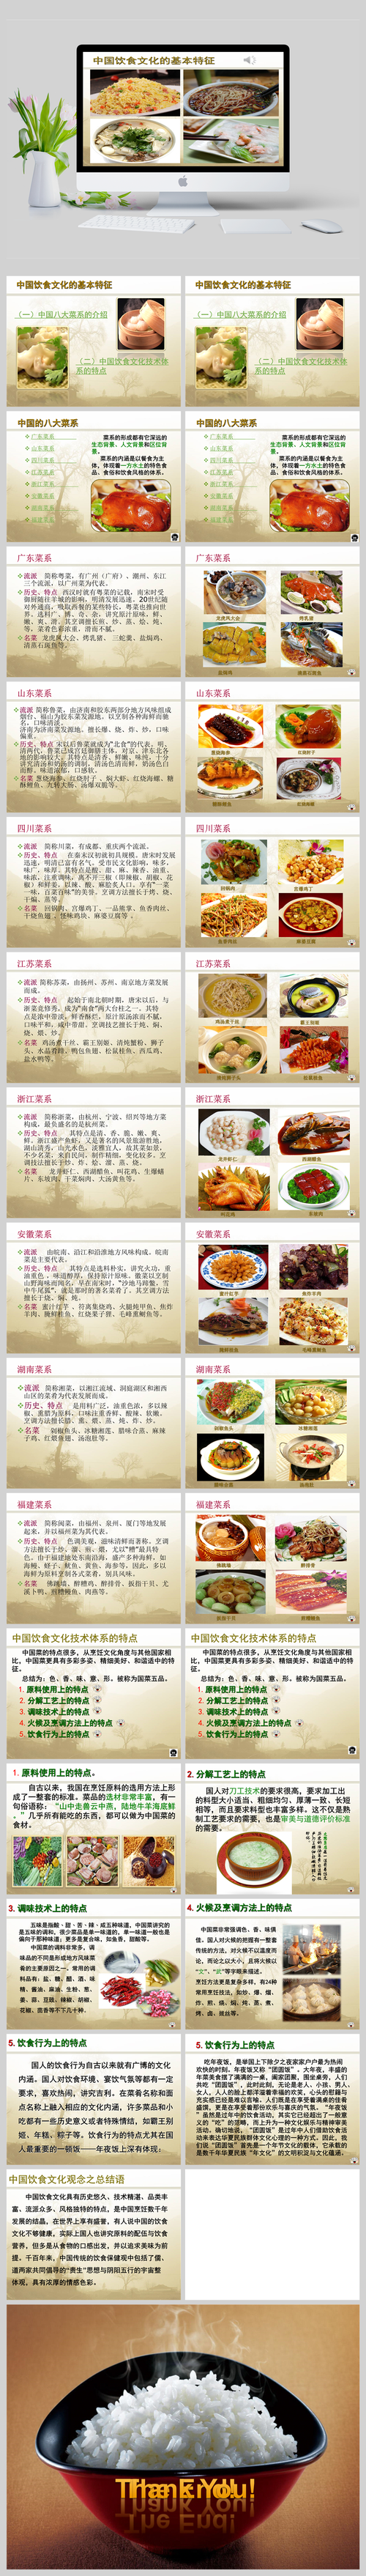 中国菜系？中国菜系八大菜系？